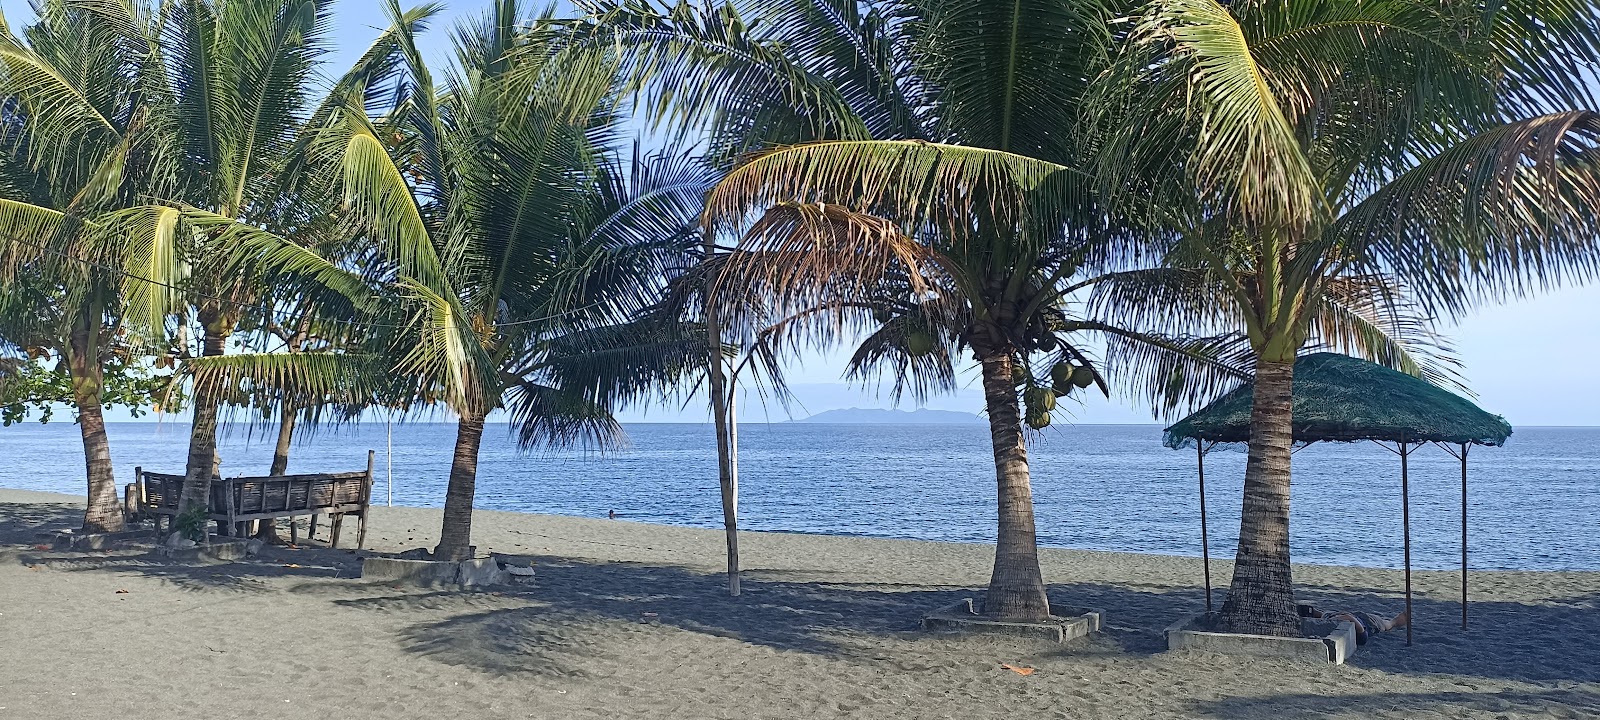 Zdjęcie Pinamalayan Beach - popularne miejsce wśród znawców relaksu